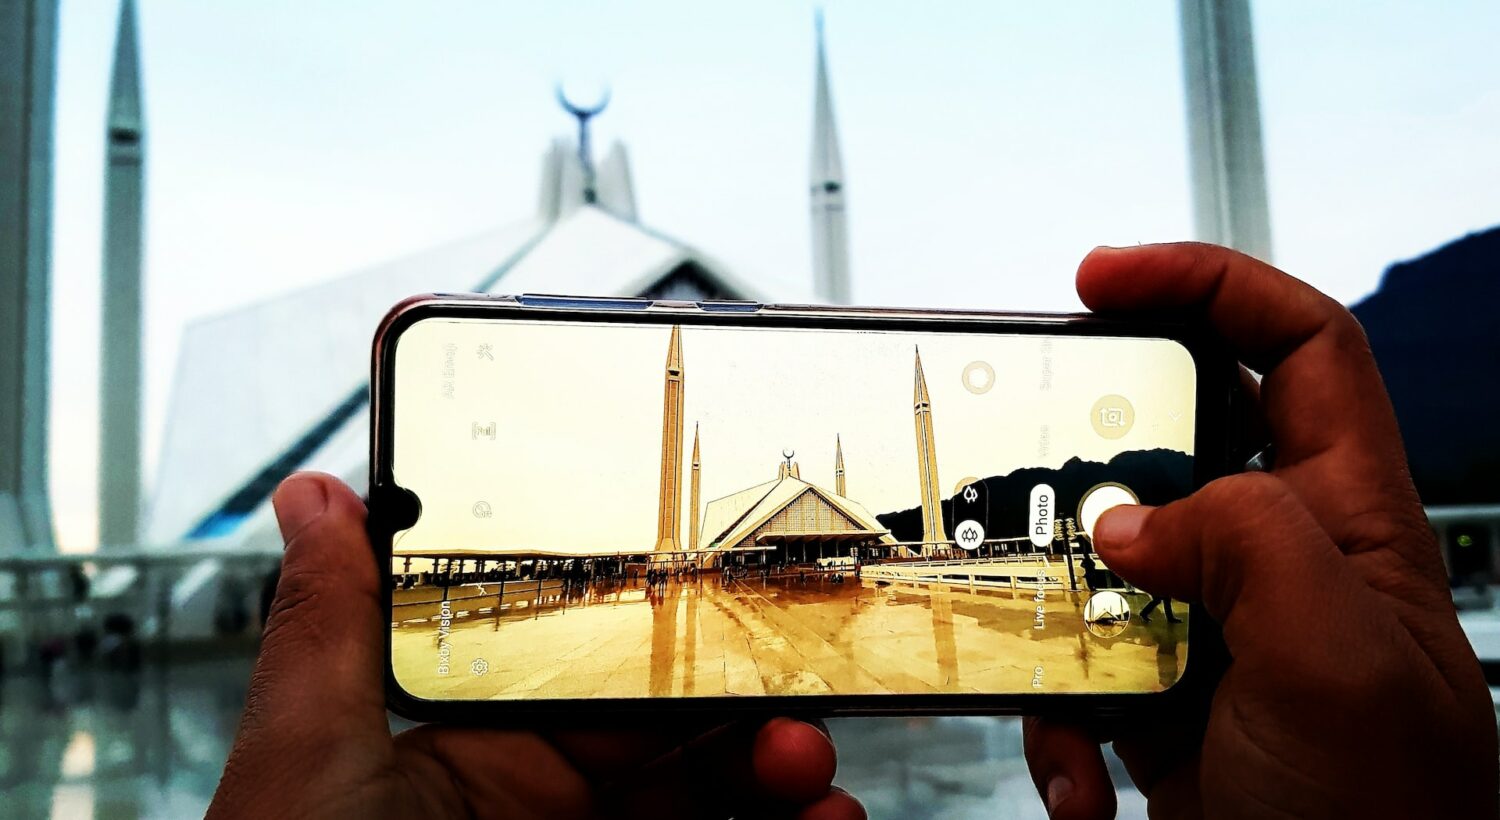 Mãos segurando um celular enquanto tira foto de uma mesquita. O tempo está nublado e o chão molhado de chuva. - Foto: Waqas Rana via Unsplash